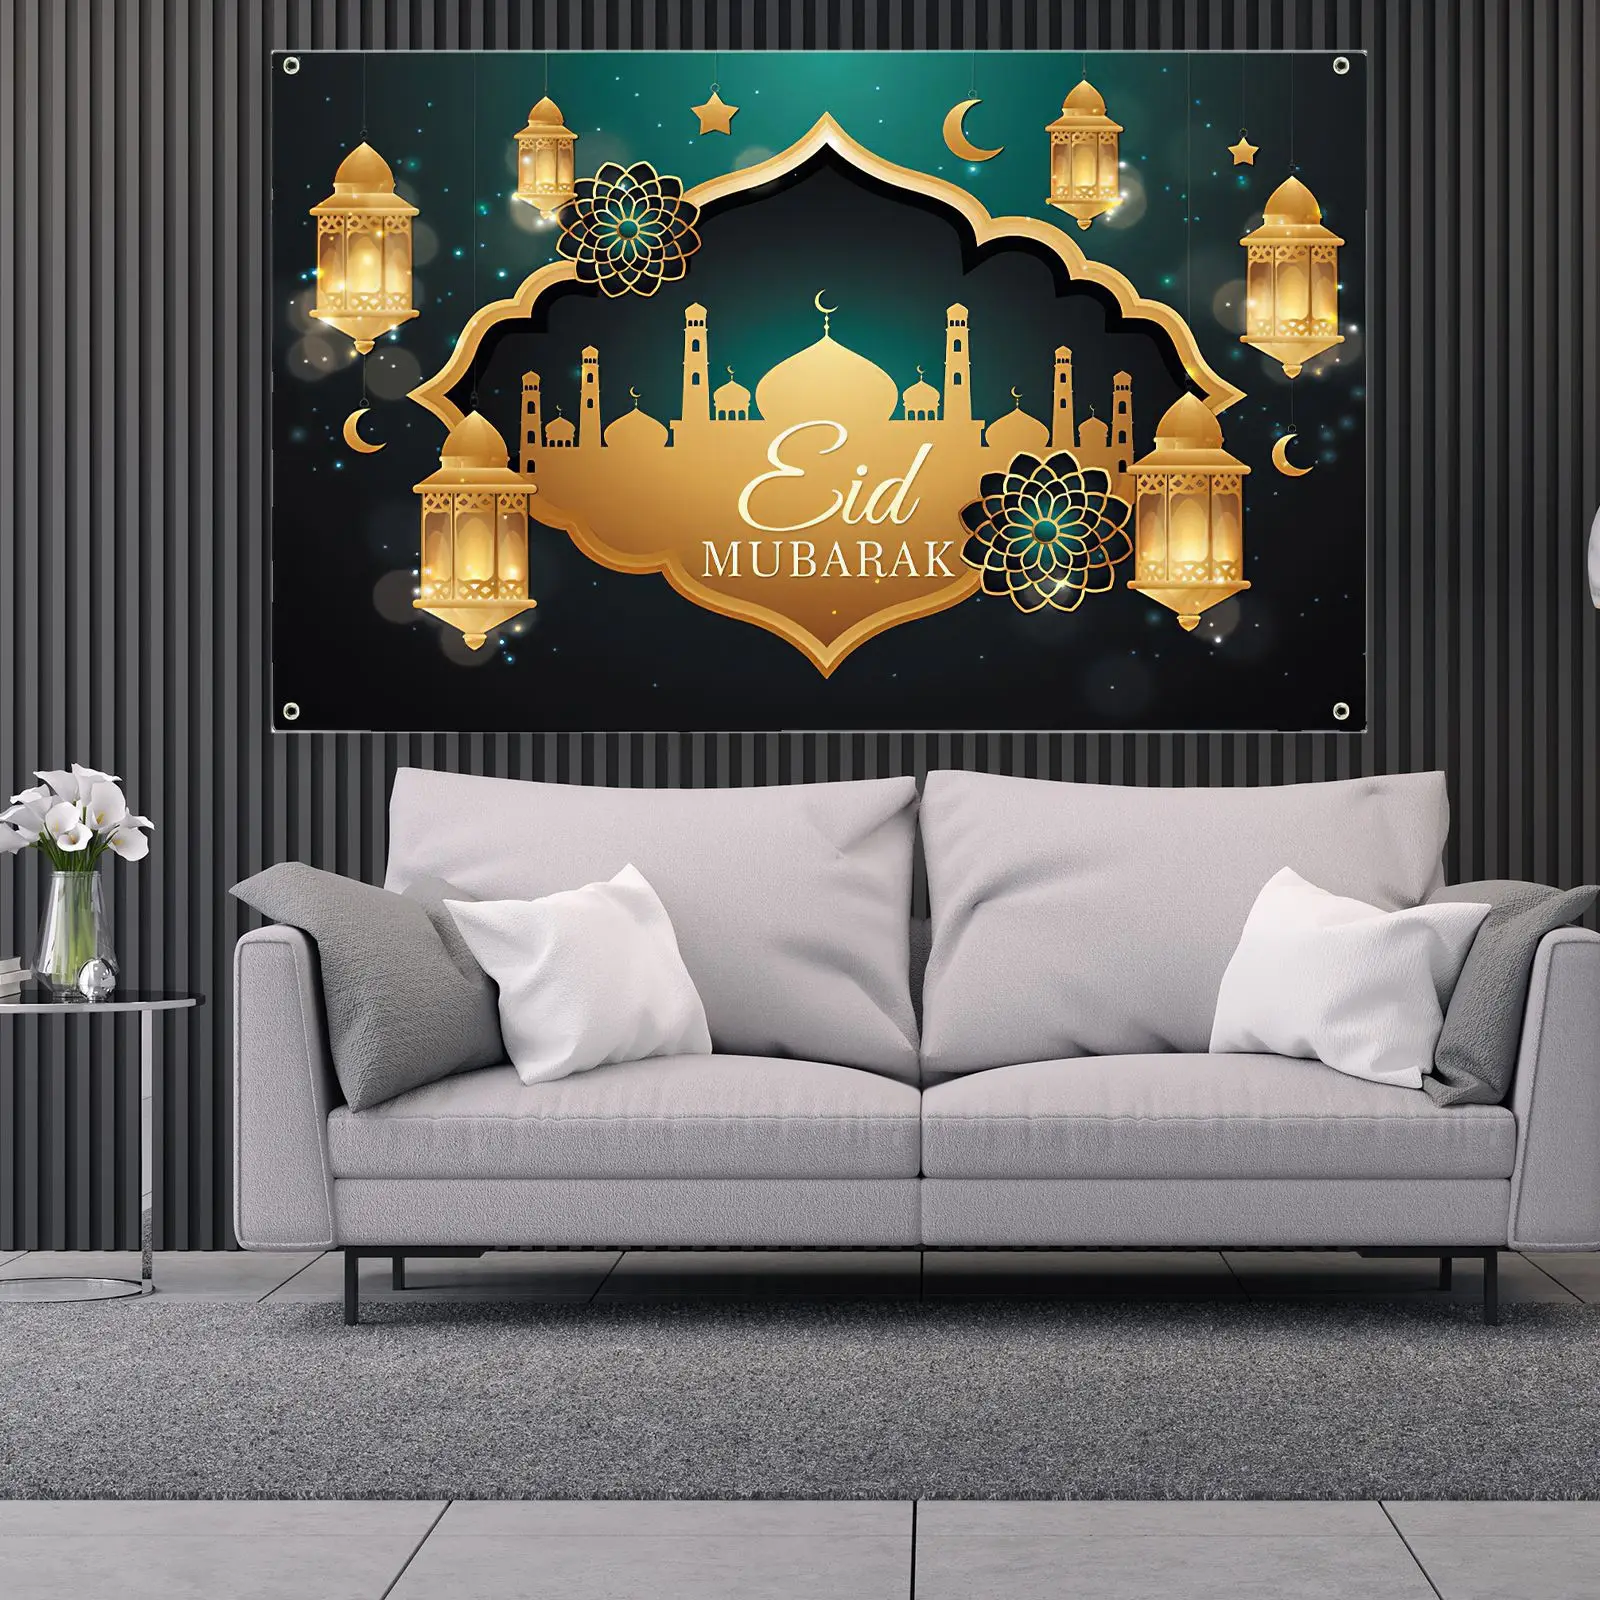 

Мусульманвечерние 2021 ИД Мубарак Рамадан фестиваль гобелен Луна фонарь дворец узор украшение для гостиной